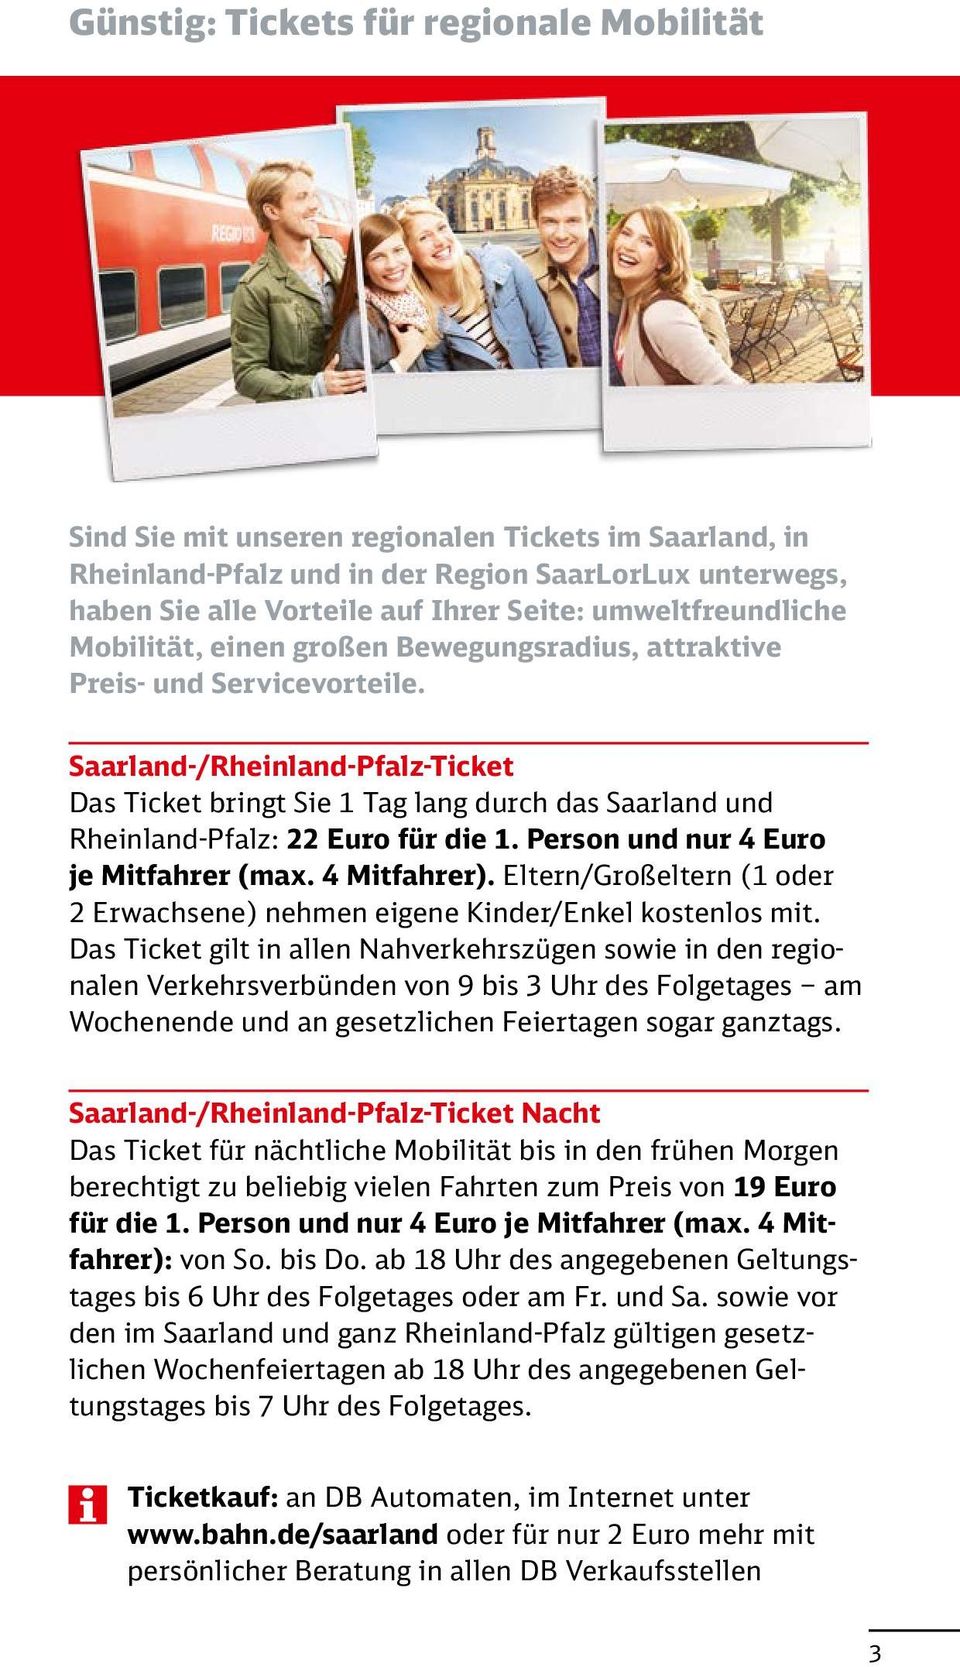 Saarland-/Rheinland-Pfalz-Ticket Das Ticket bringt Sie 1 Tag lang durch das Saarland und Rheinland-Pfalz: 22 Euro für die 1. Person und nur 4 Euro je Mitfahrer (max. 4 Mitfahrer).